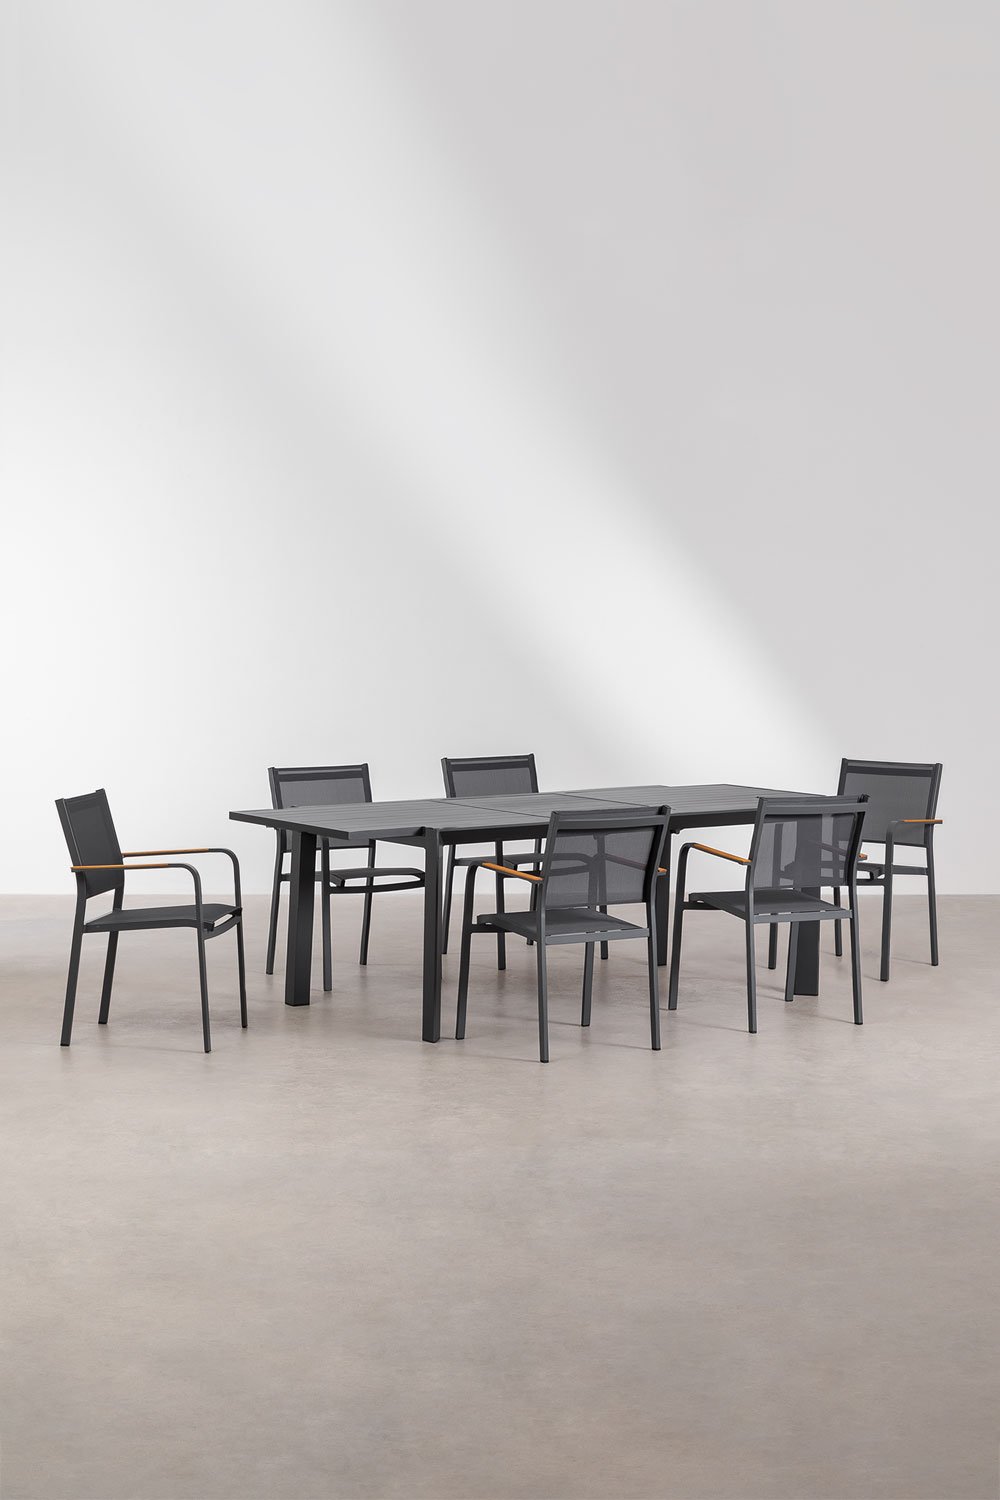 Set aus ausziehbarem rechteckigem Tisch aus Aluminium (180-240x100 cm) Starmi und 6 stapelbaren Gartenstühlen aus Aluminium Arch, Galeriebild 1